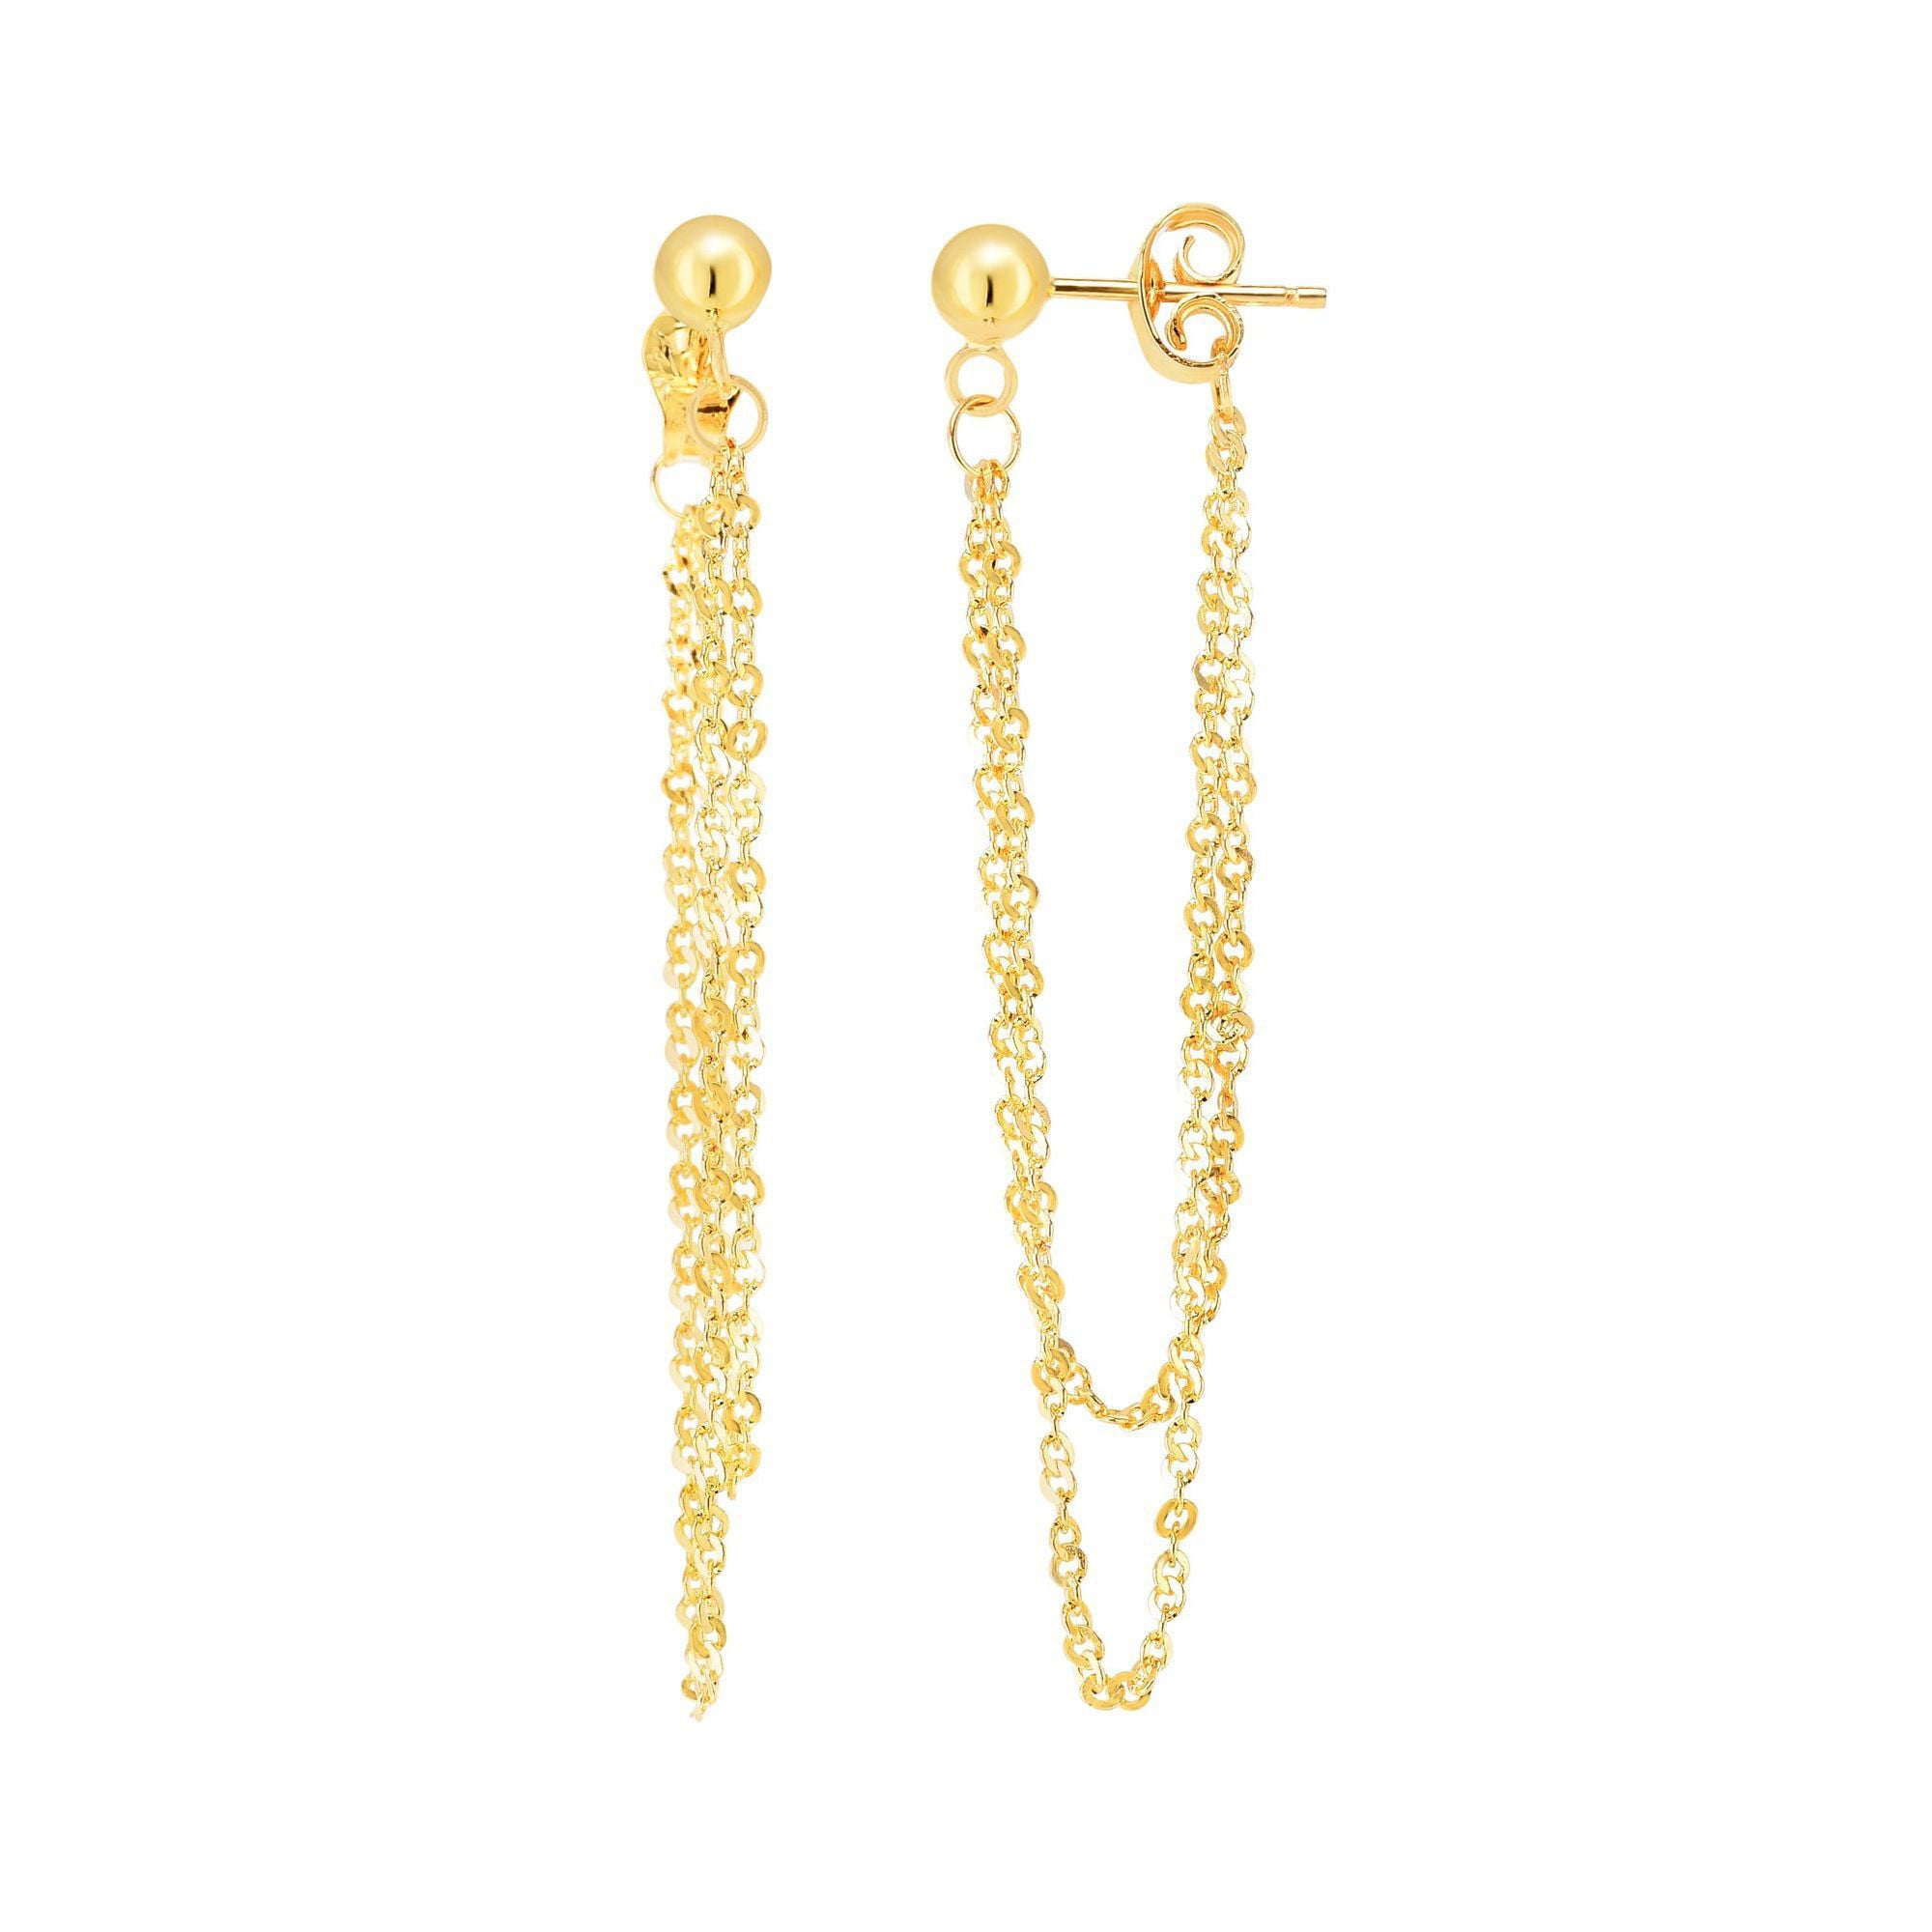 Large fancy pearl earrings gold, unusual massive leaf dangle earrings -  Ruby Lane